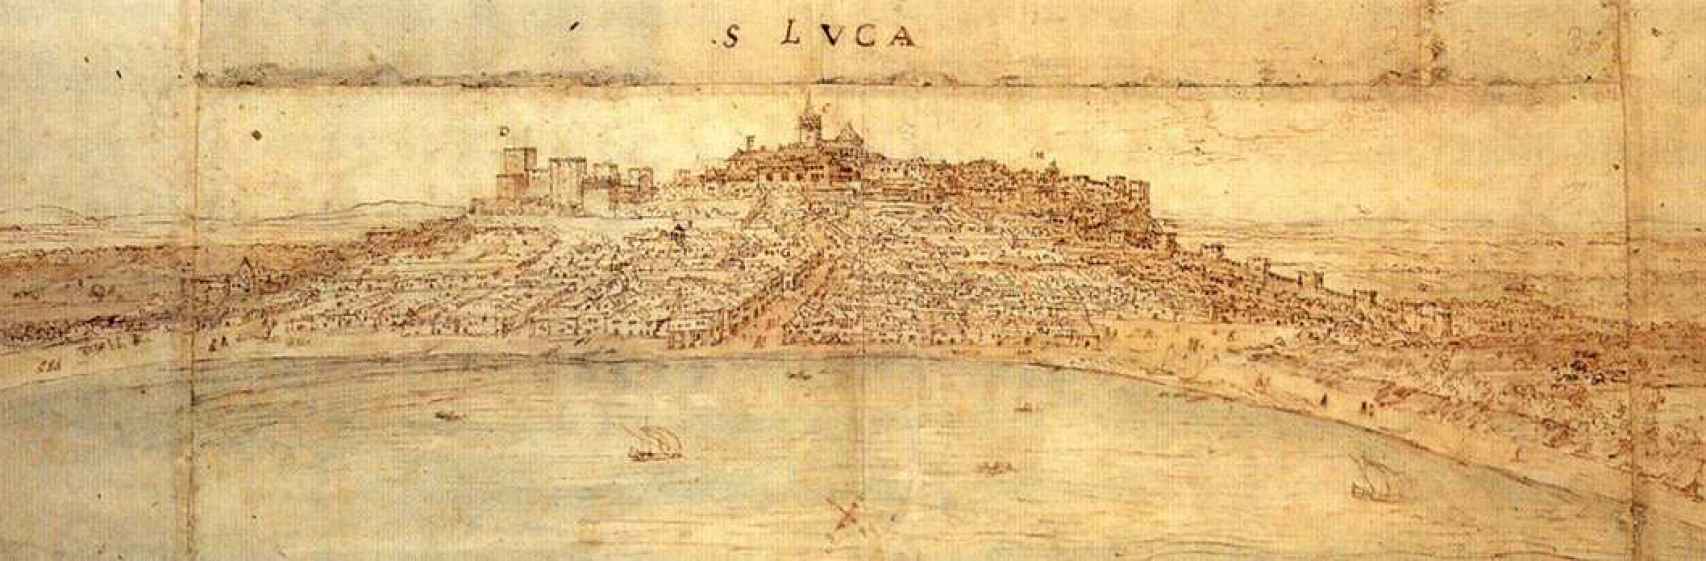 Vista panorámica de la ensenada de Sanlúcar de Barrameda. 1567.